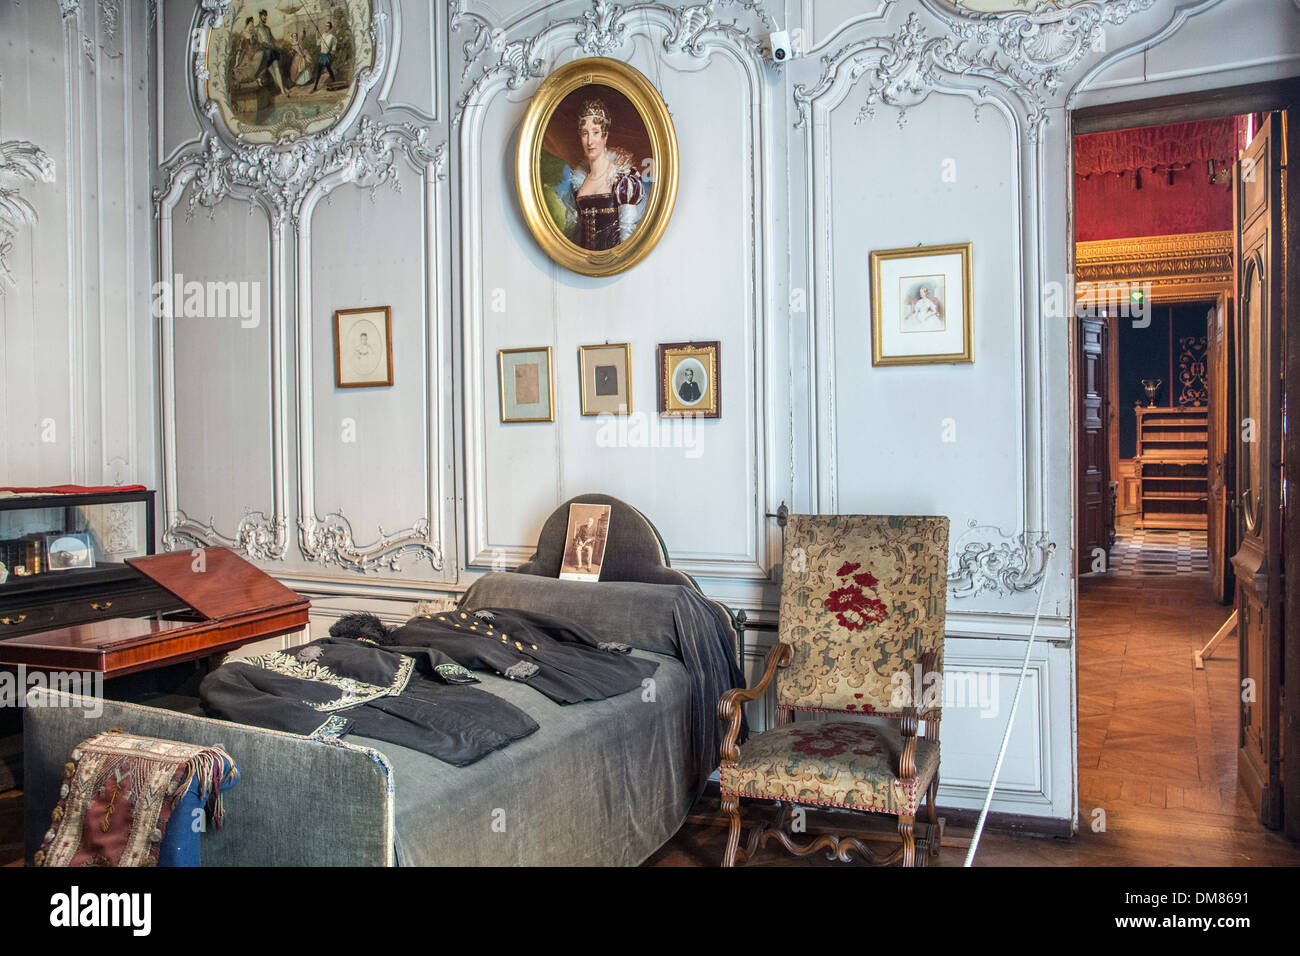 Chambre à coucher DU DUC D'ÄôAUMALE (1822-1897) avec son armée d'uniformes, de petits appartements créée en 1845 et 1846 par le peintre et décorateur EUGÈNE LAMI, CHATEAU DE CHANTILLY, OISE (60), FRANCE Banque D'Images